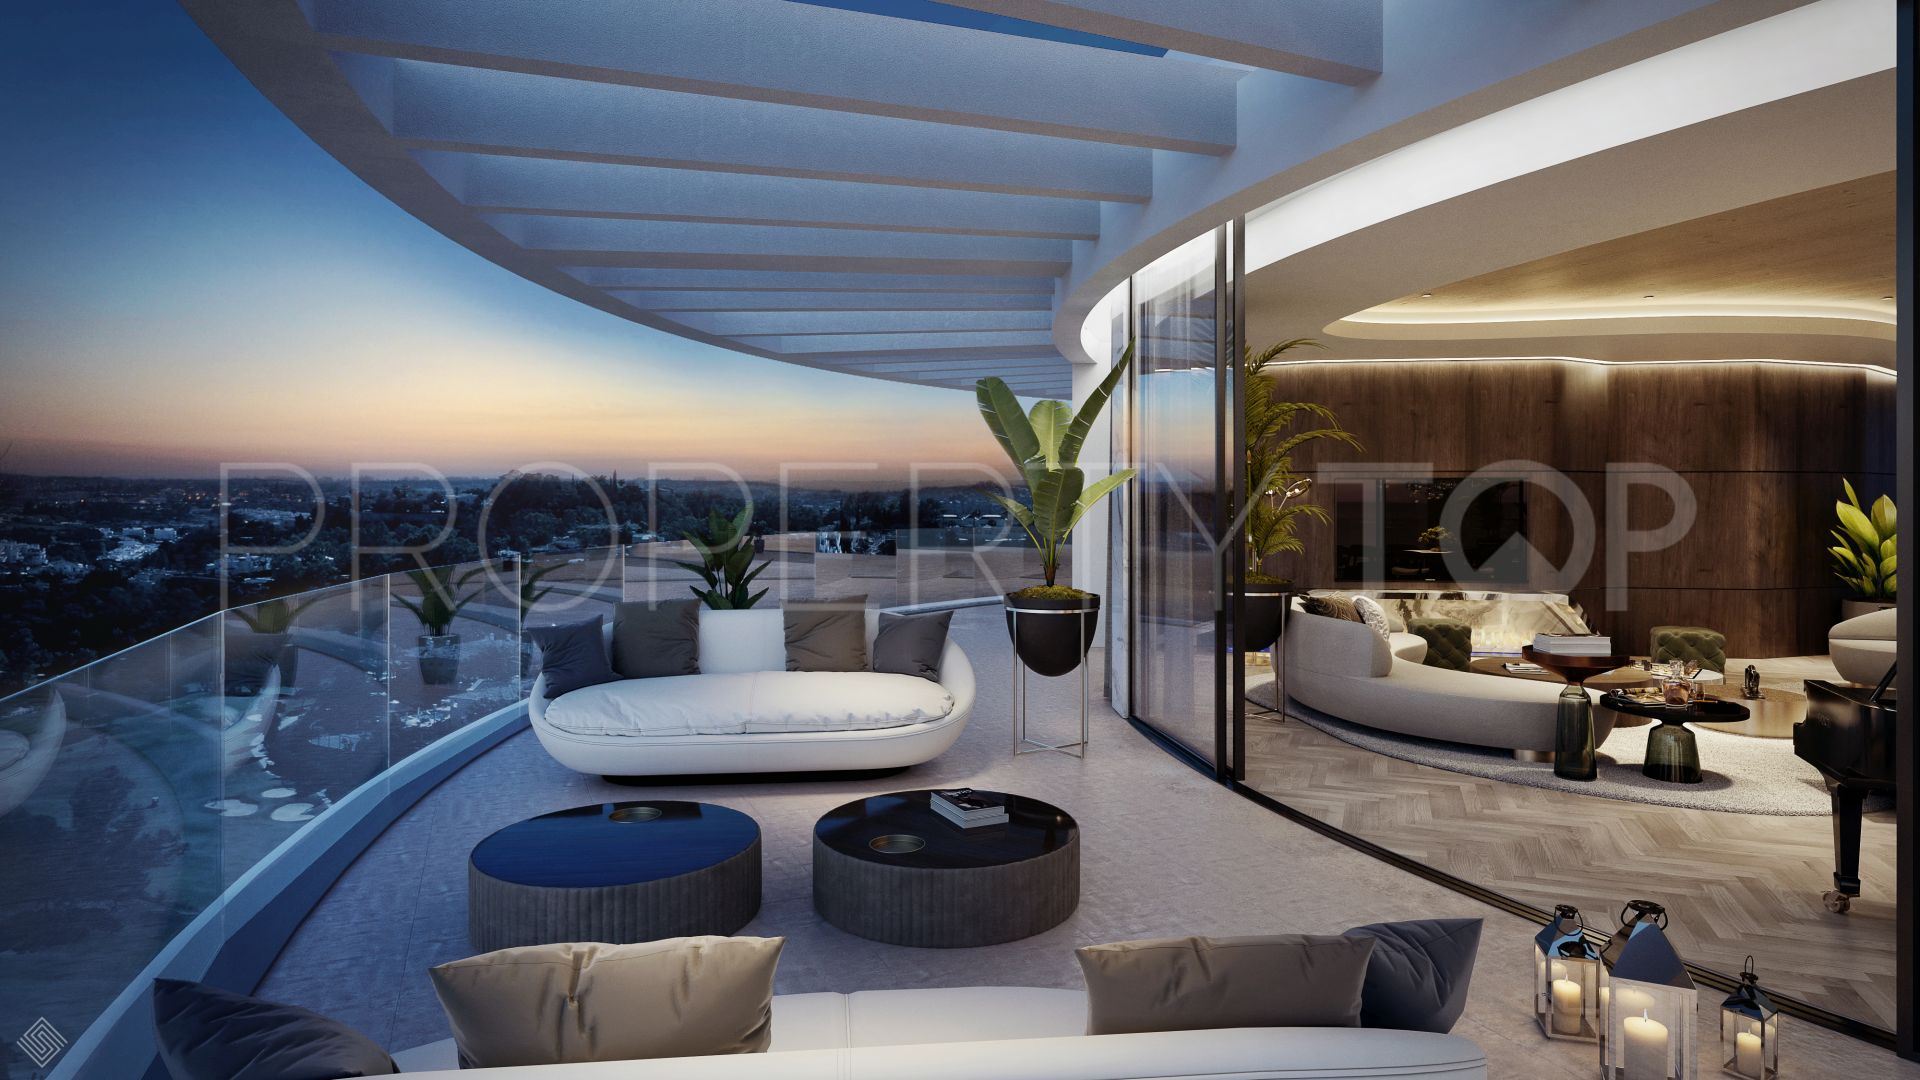 La Quinta 3 bedrooms duplex penthouse for sale